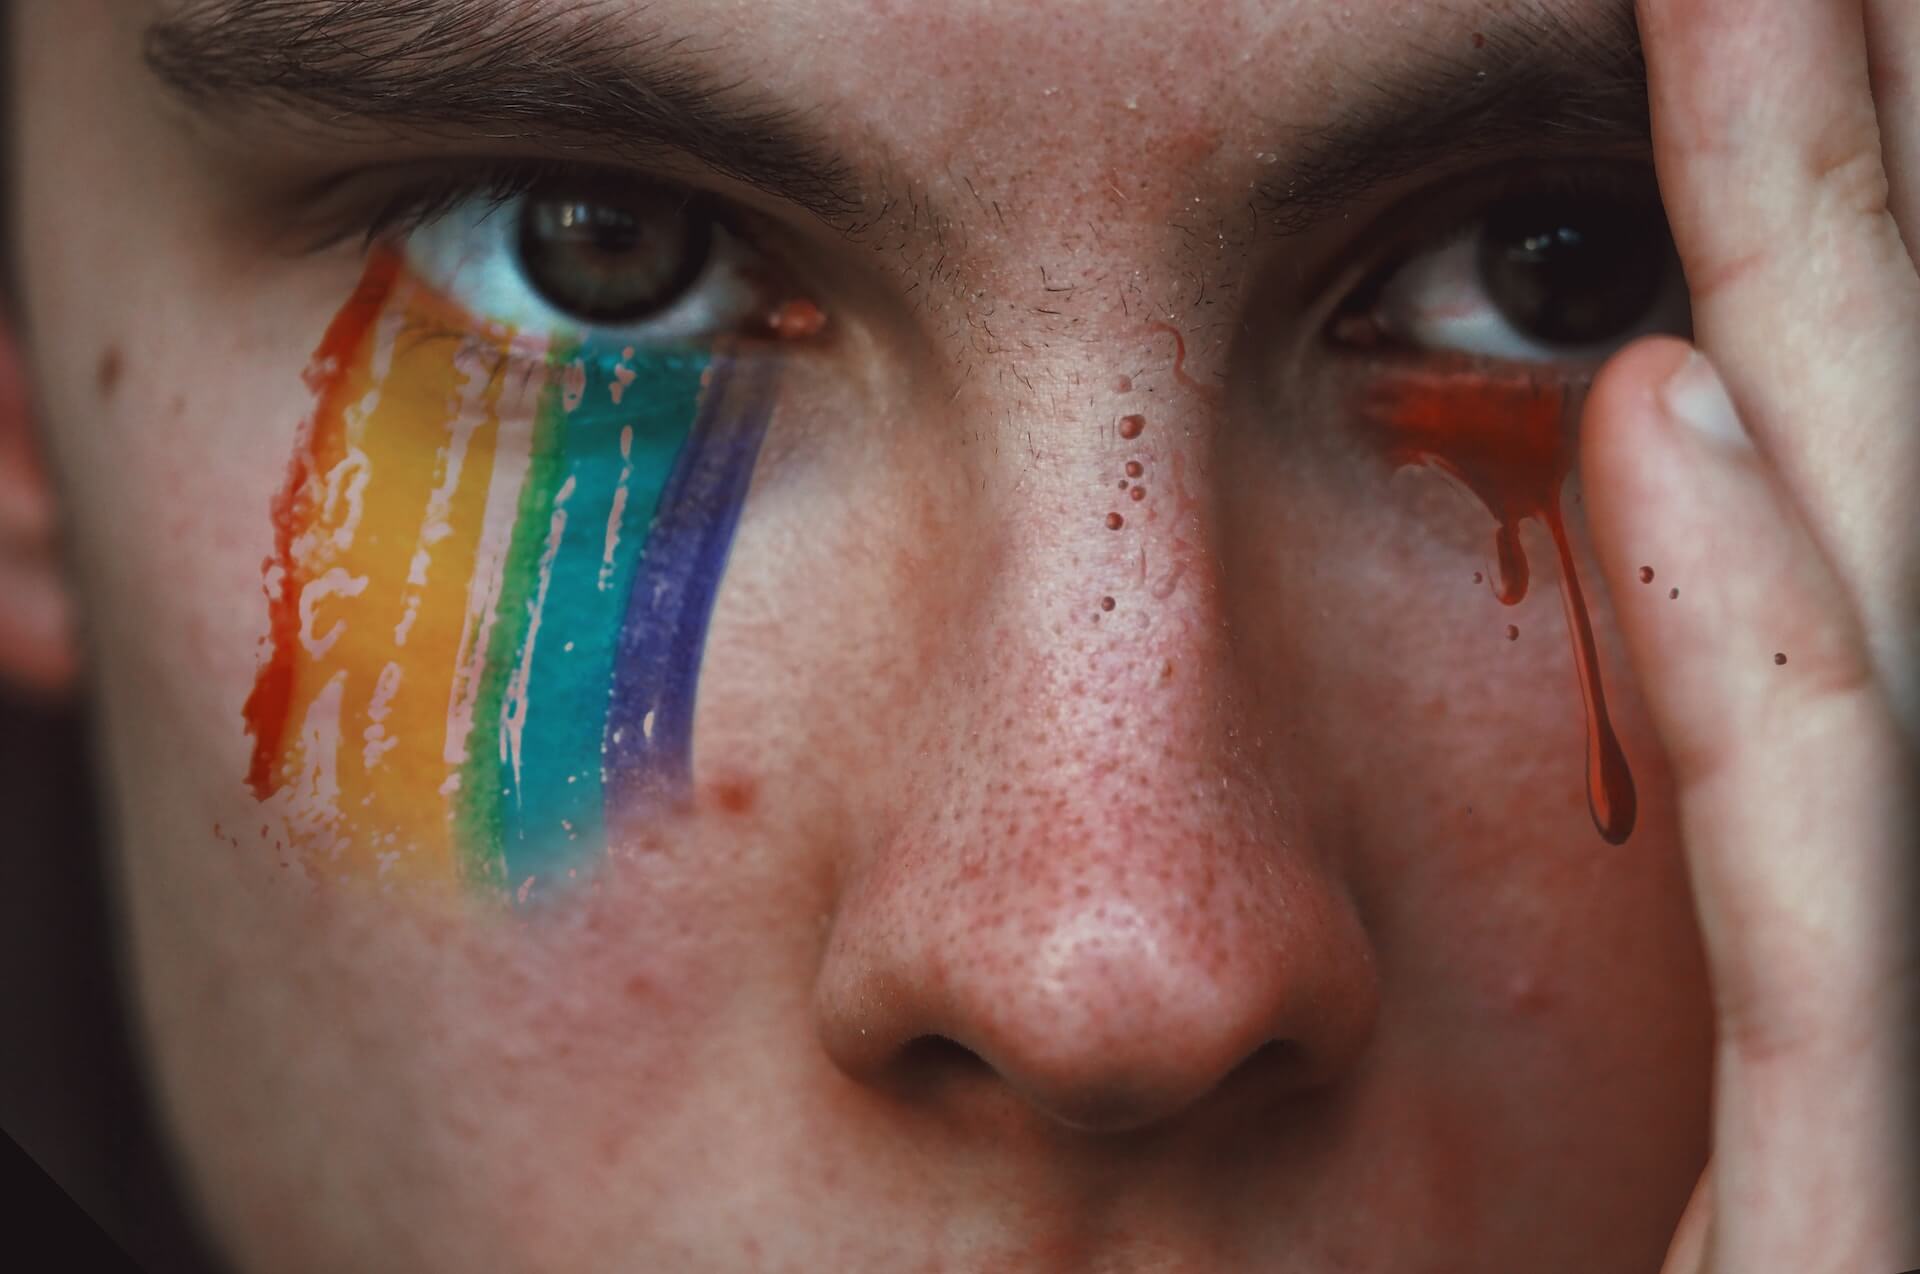 omofobia interiorizzata, stigma invisibile